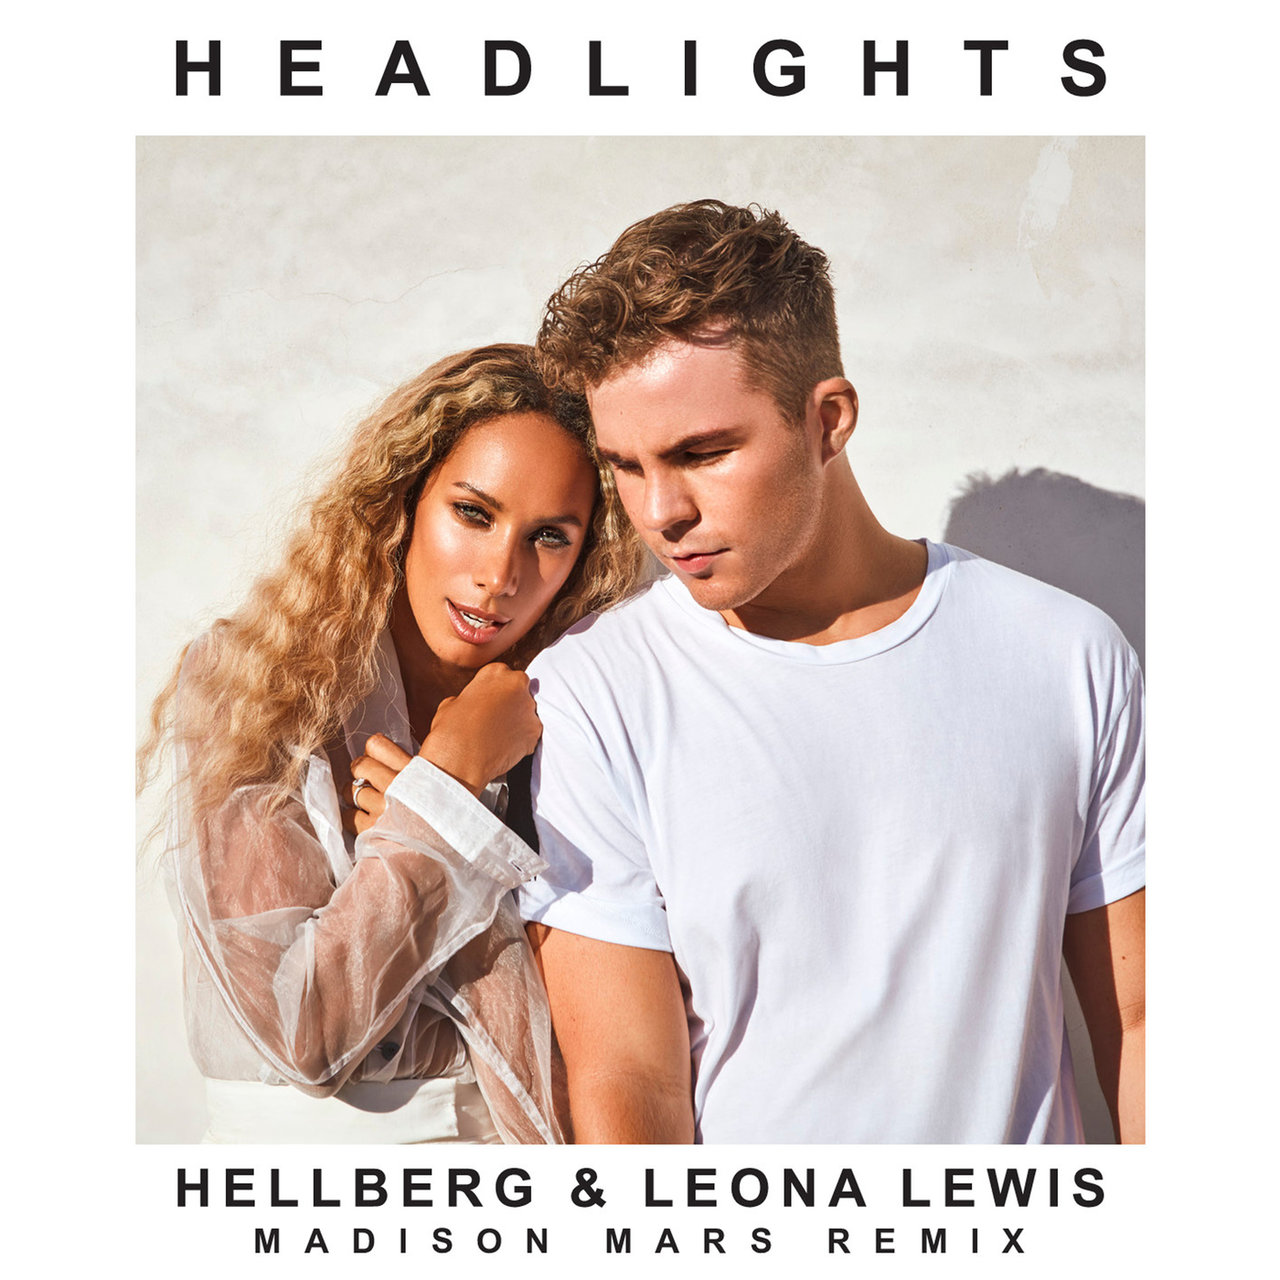 Hellberg & Leona Lewis — Headlights (Madison Mars Remix) cover artwork